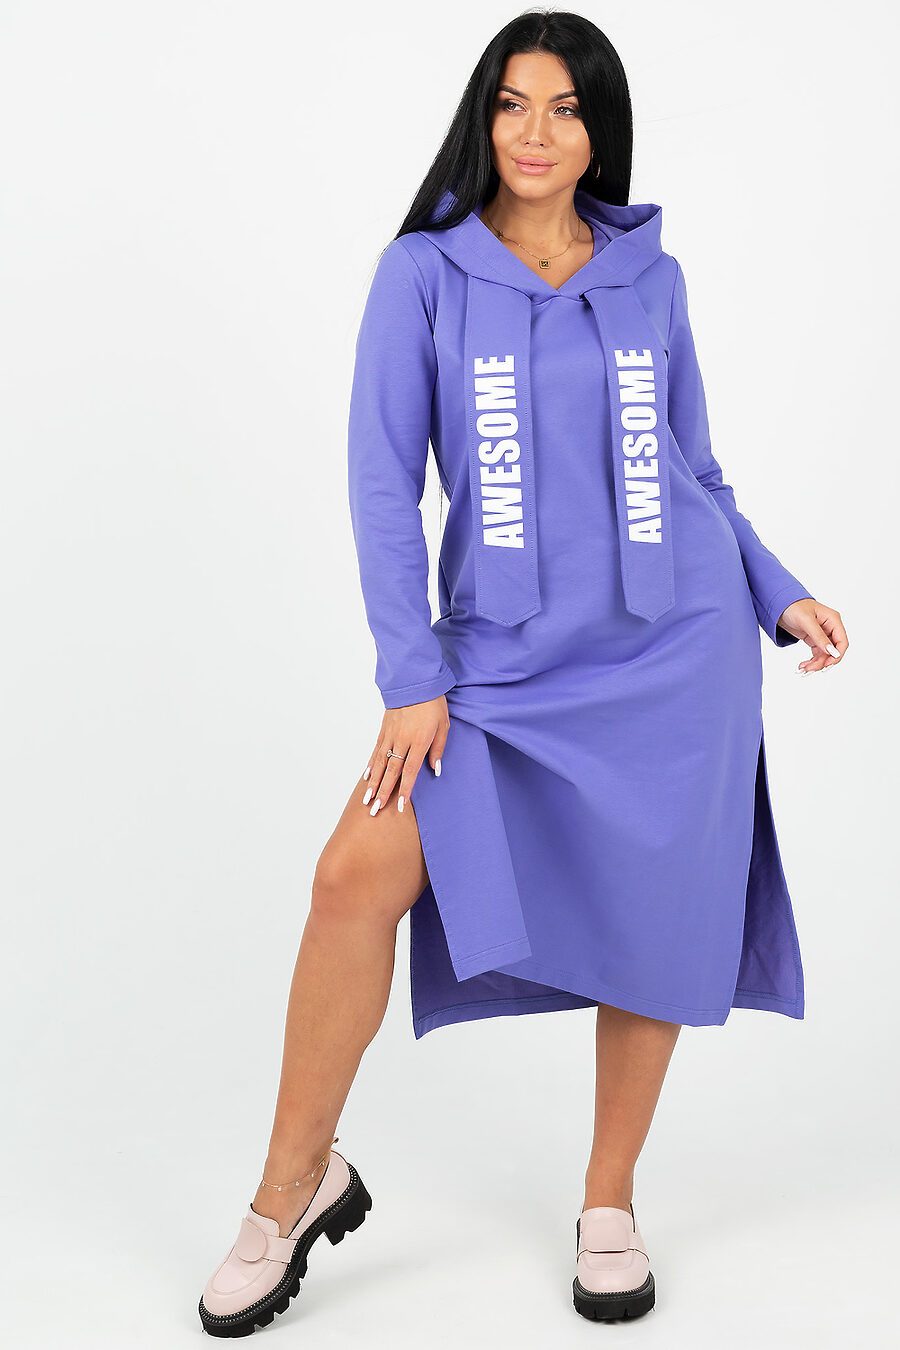 Платье Гледис для женщин НАТАЛИ 807744 купить оптом от производителя. Совместная покупка женской одежды в OptMoyo